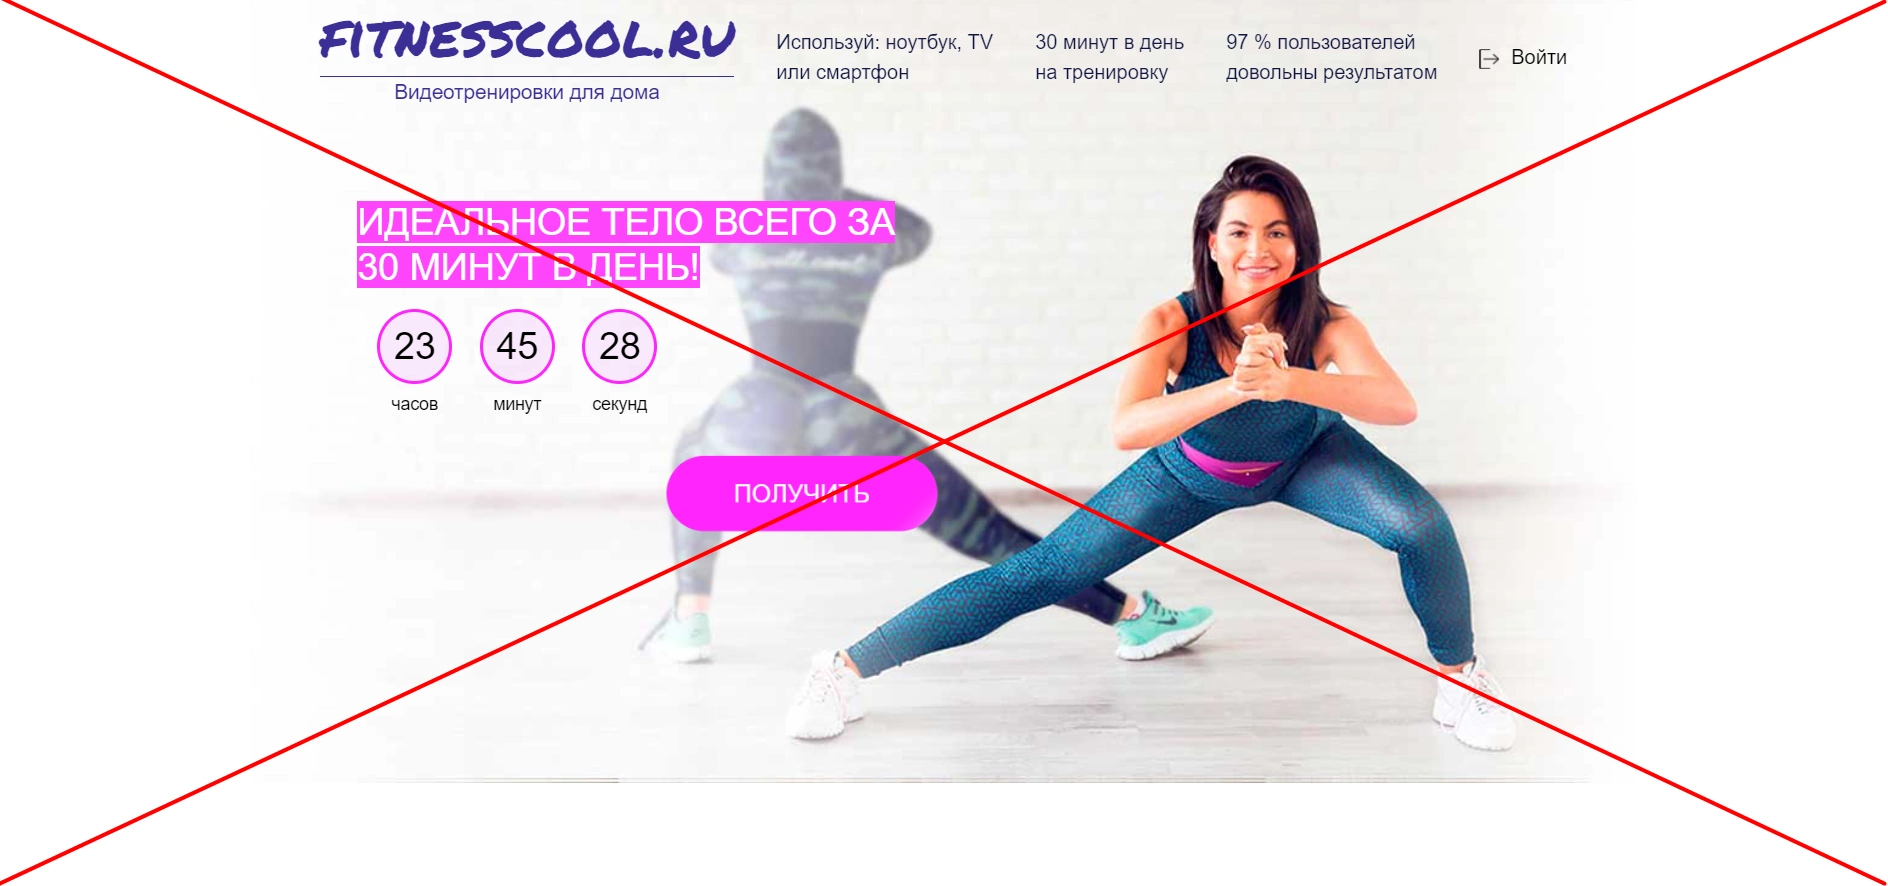 Как отменить подписку FitnessCool.ru и вернуть деньги